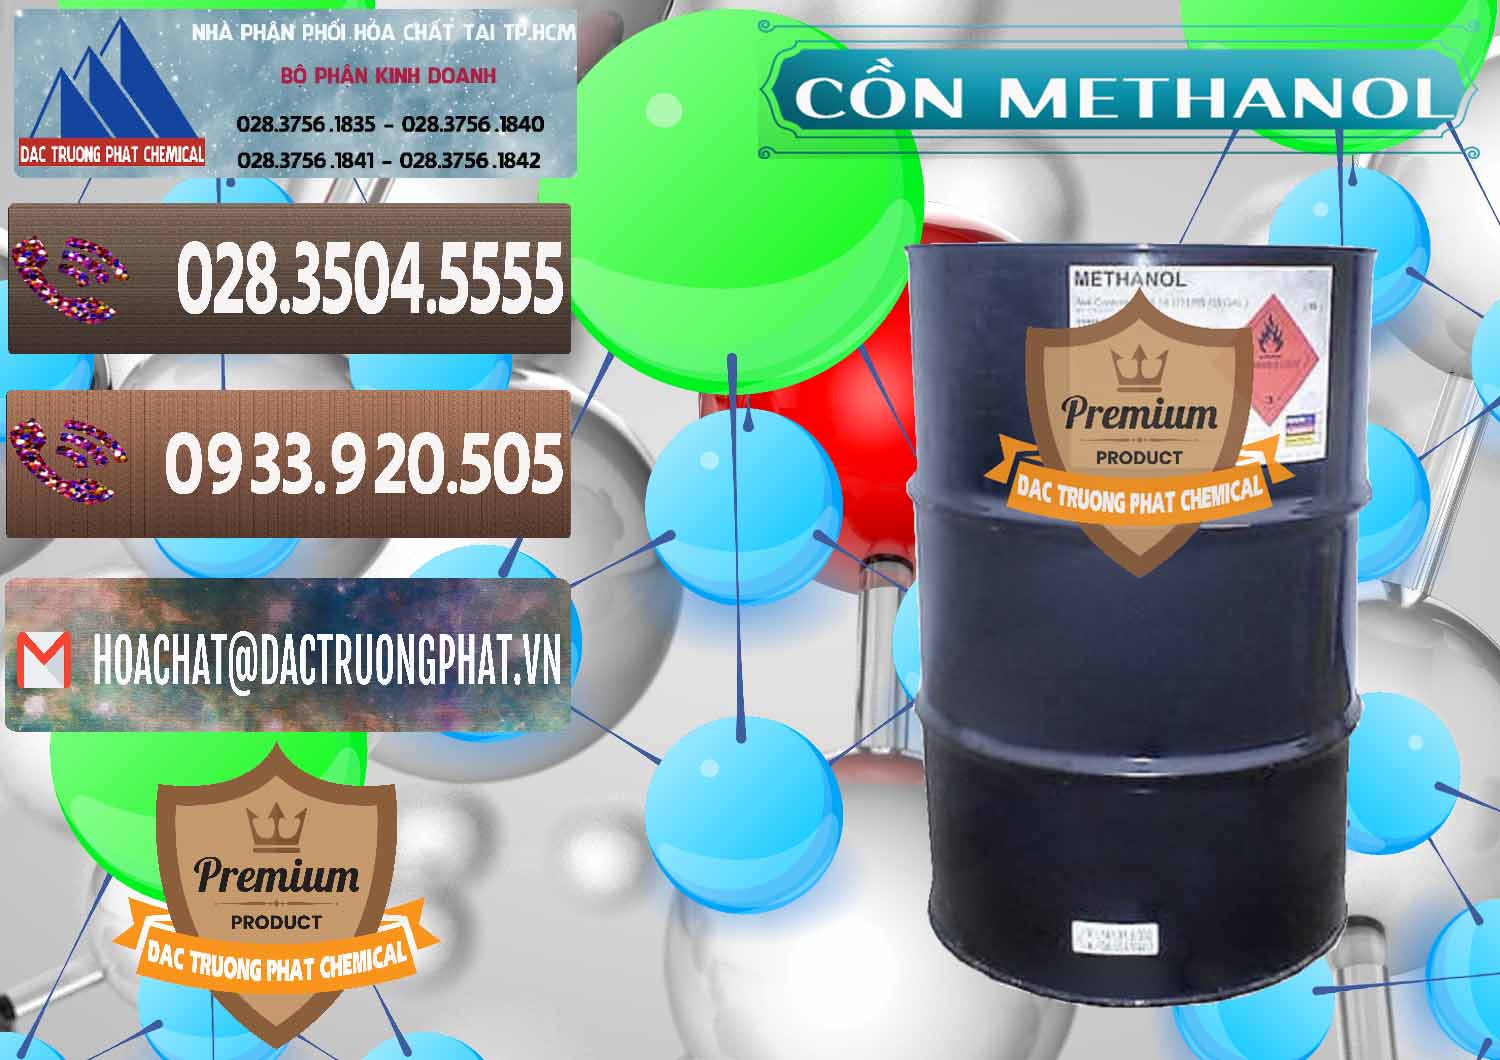 Cty chuyên bán & cung cấp Cồn Methanol - Methyl Alcohol Mã Lai Malaysia - 0331 - Công ty chuyên kinh doanh - cung cấp hóa chất tại TP.HCM - hoachatviet.net